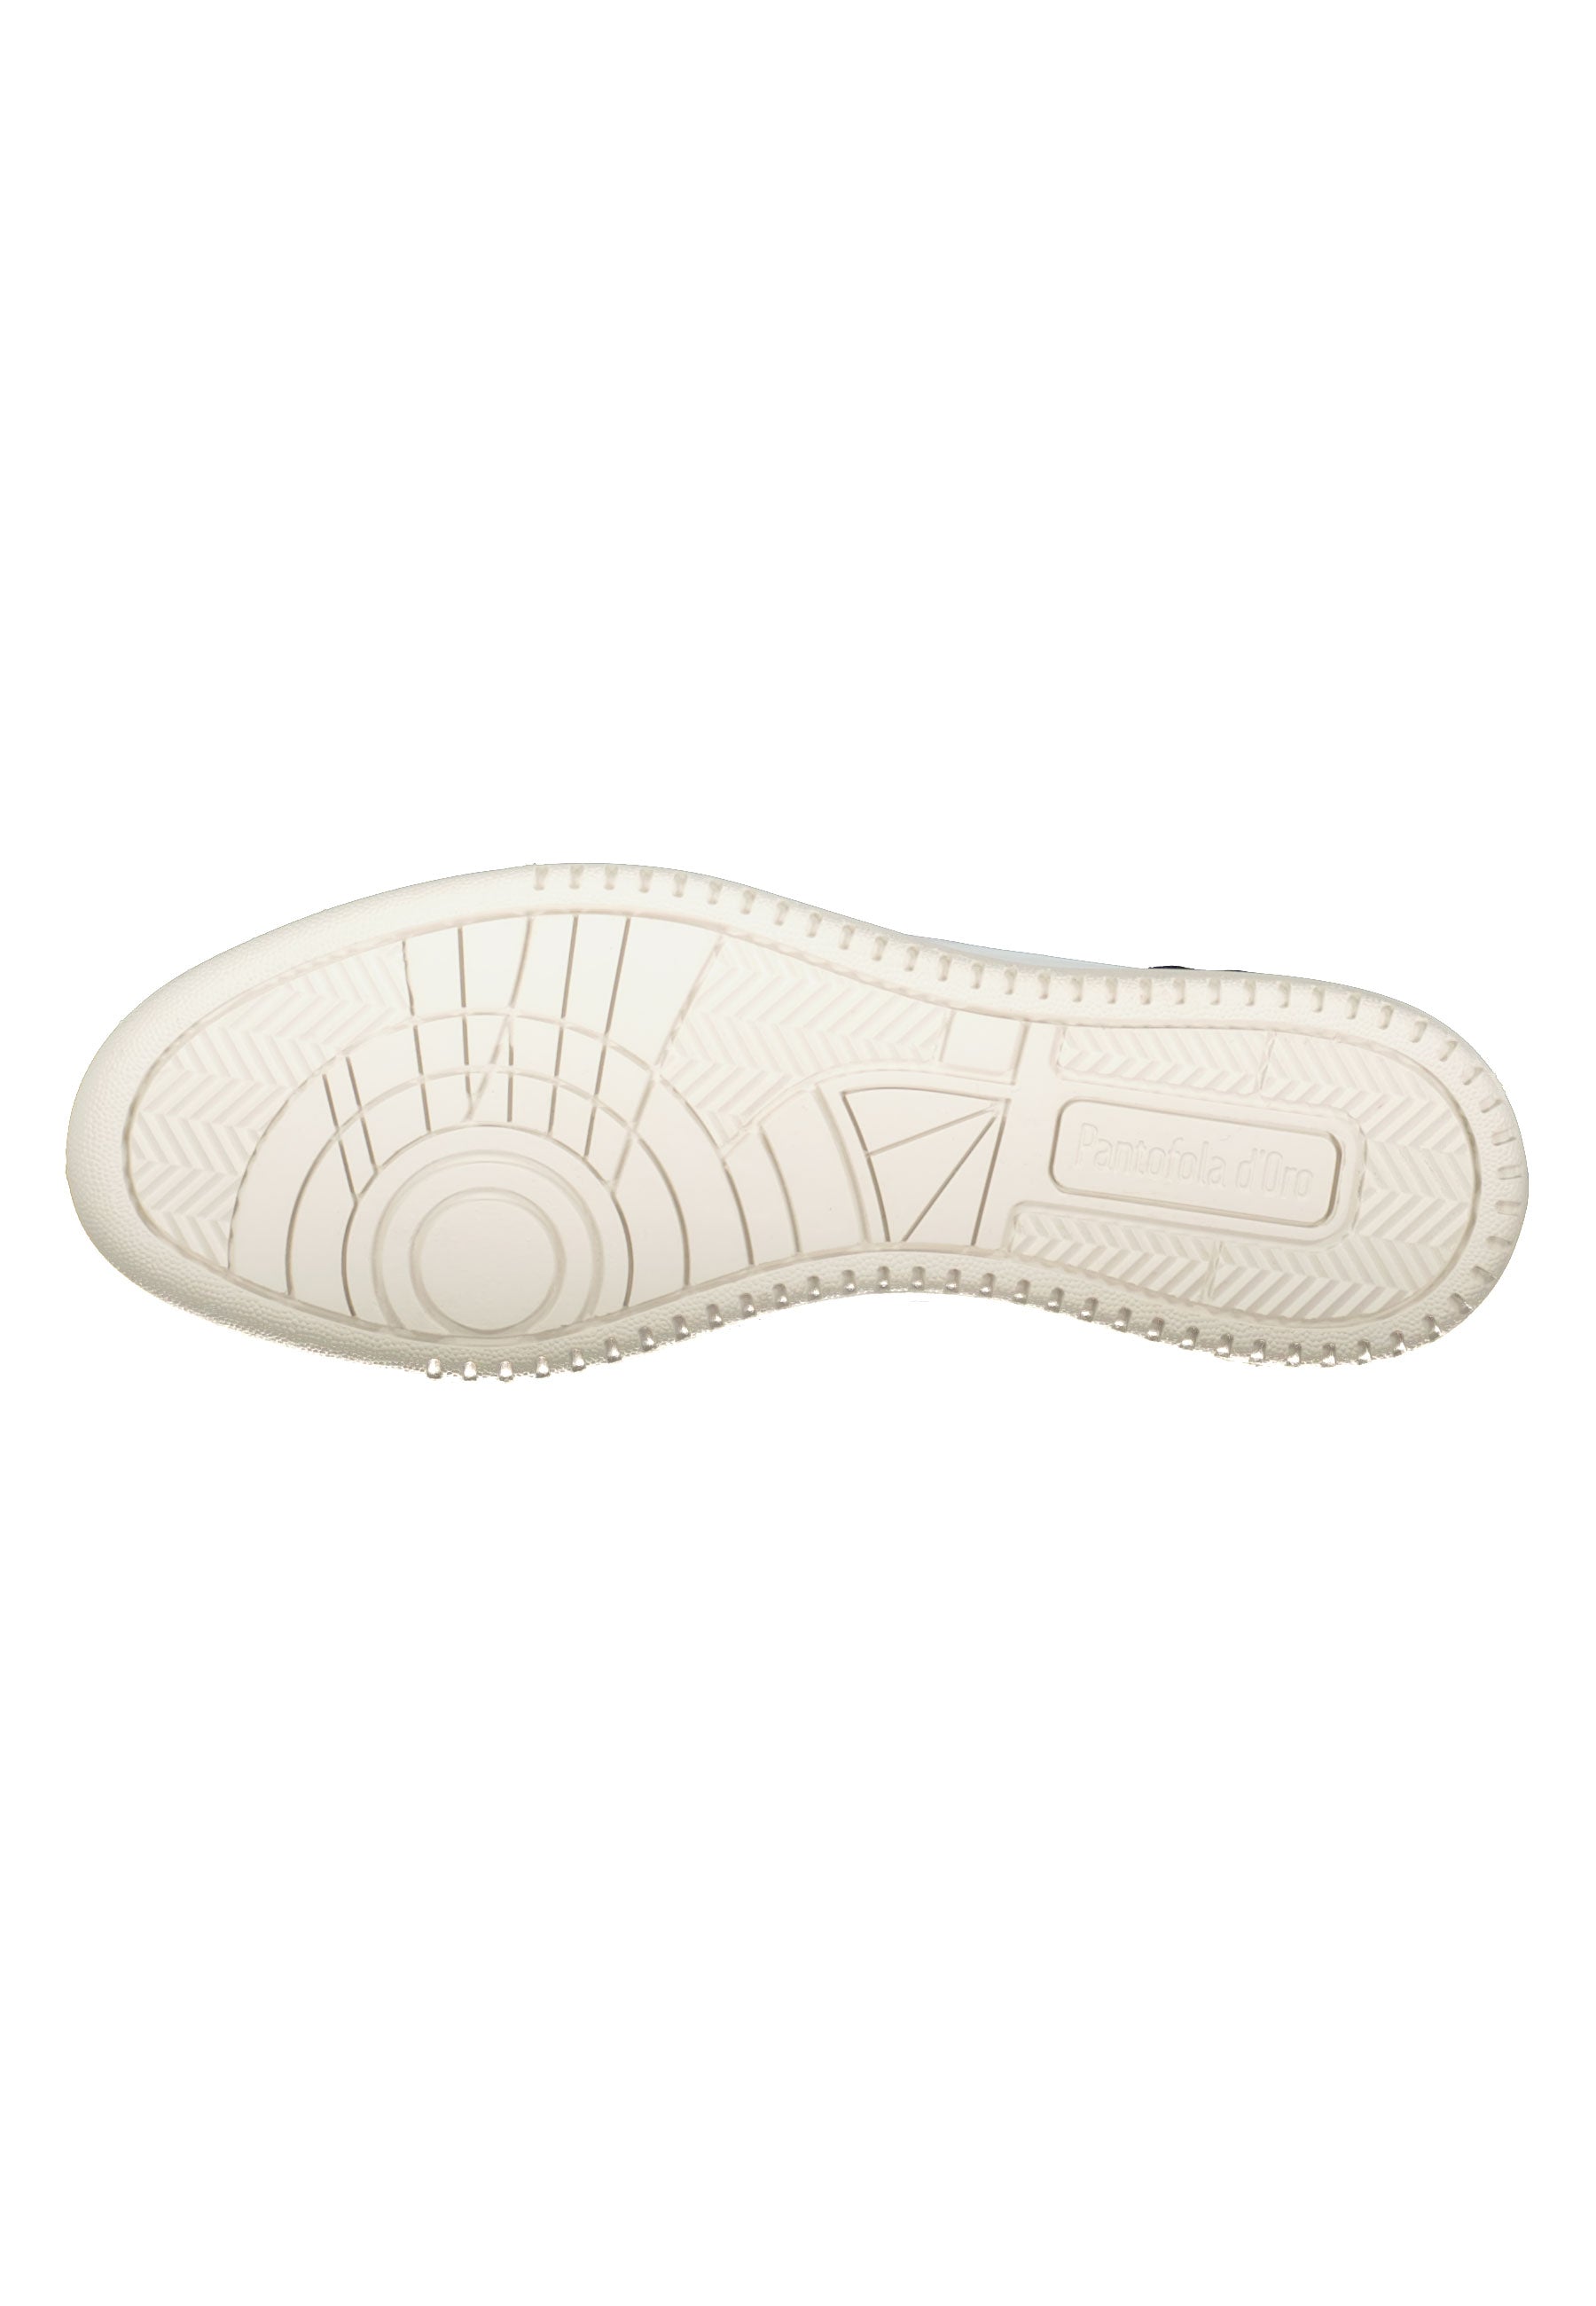 Baveno Low in Bright White Sneakers Pantofola d'Oro   